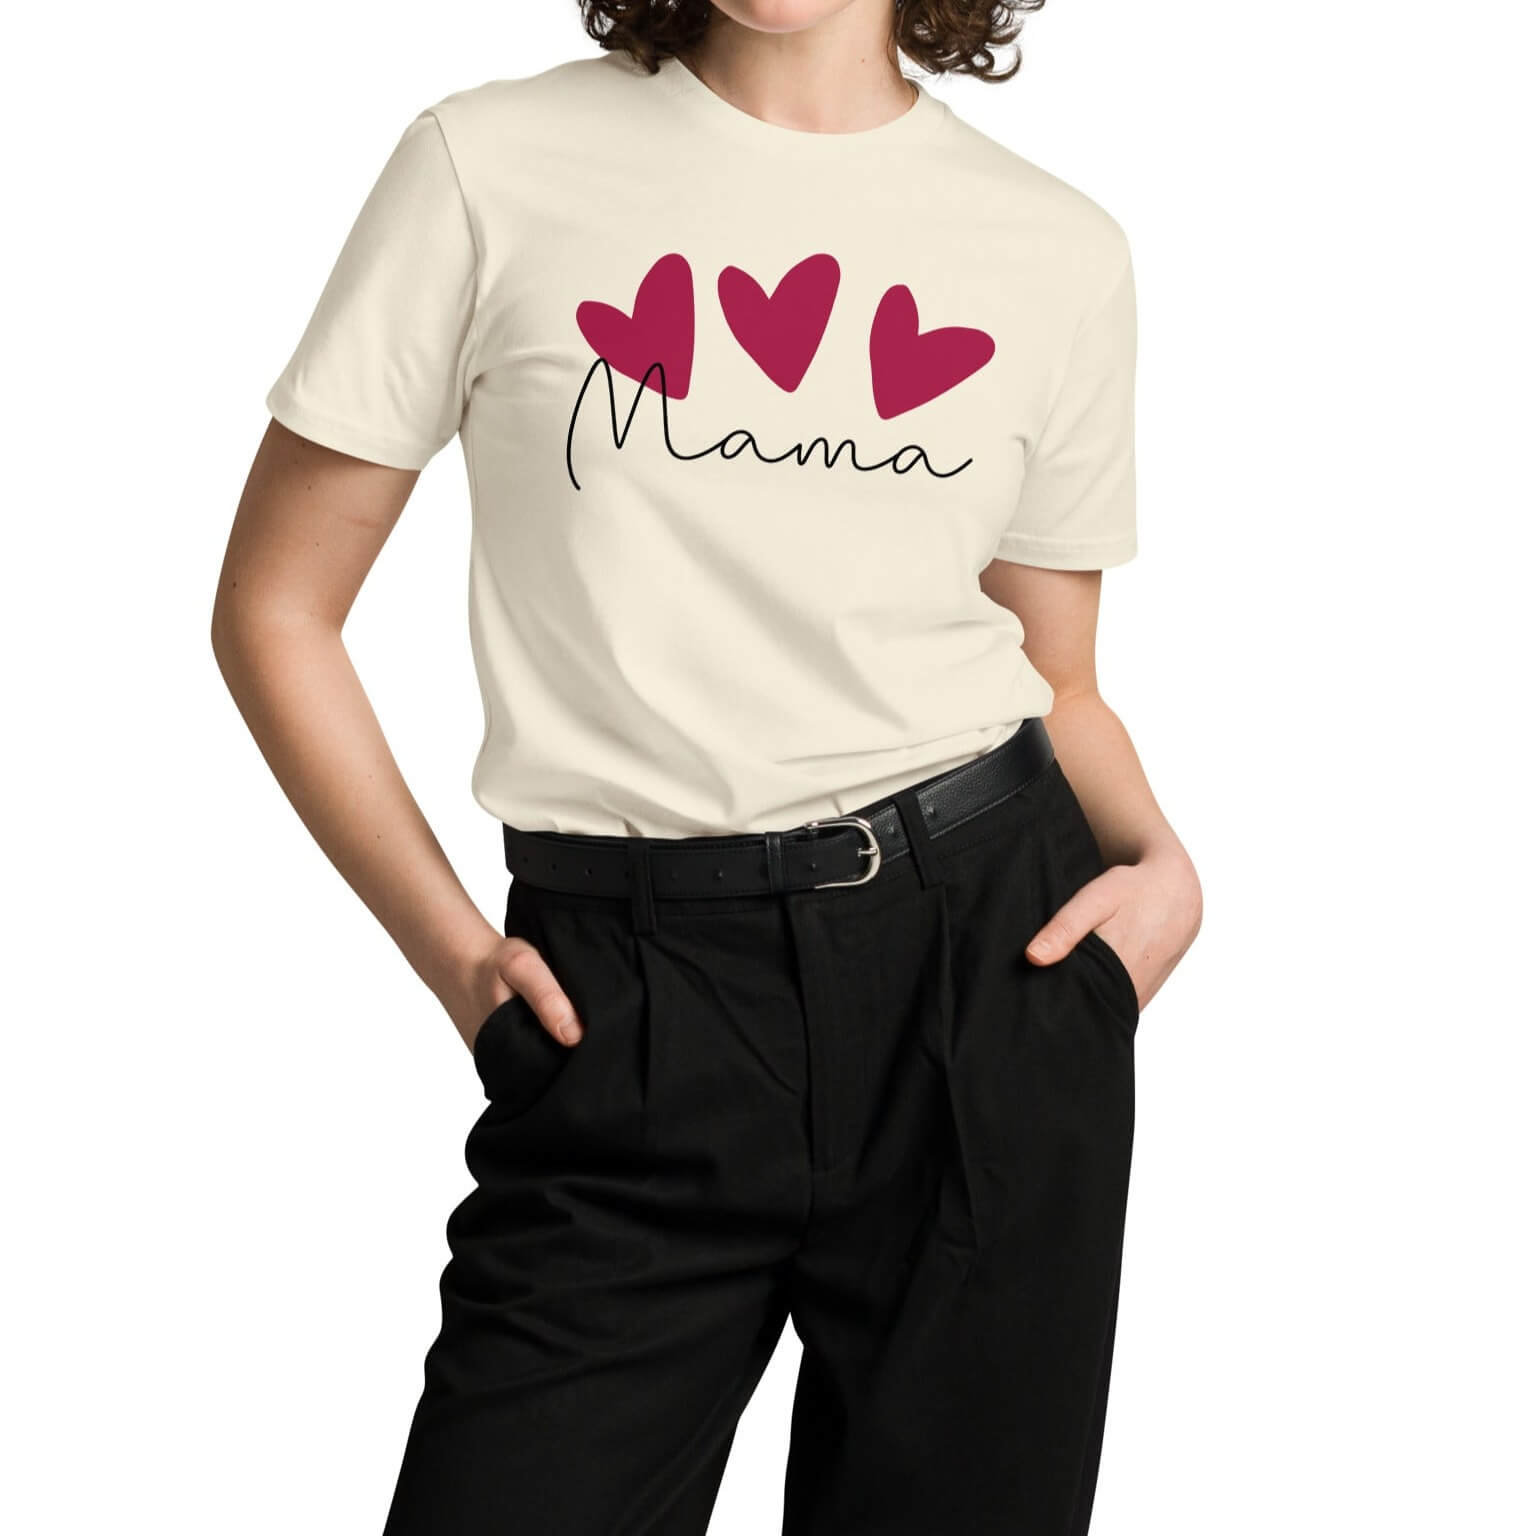 One-of-a kind mom shirts, mama shirt, custom t-shirts